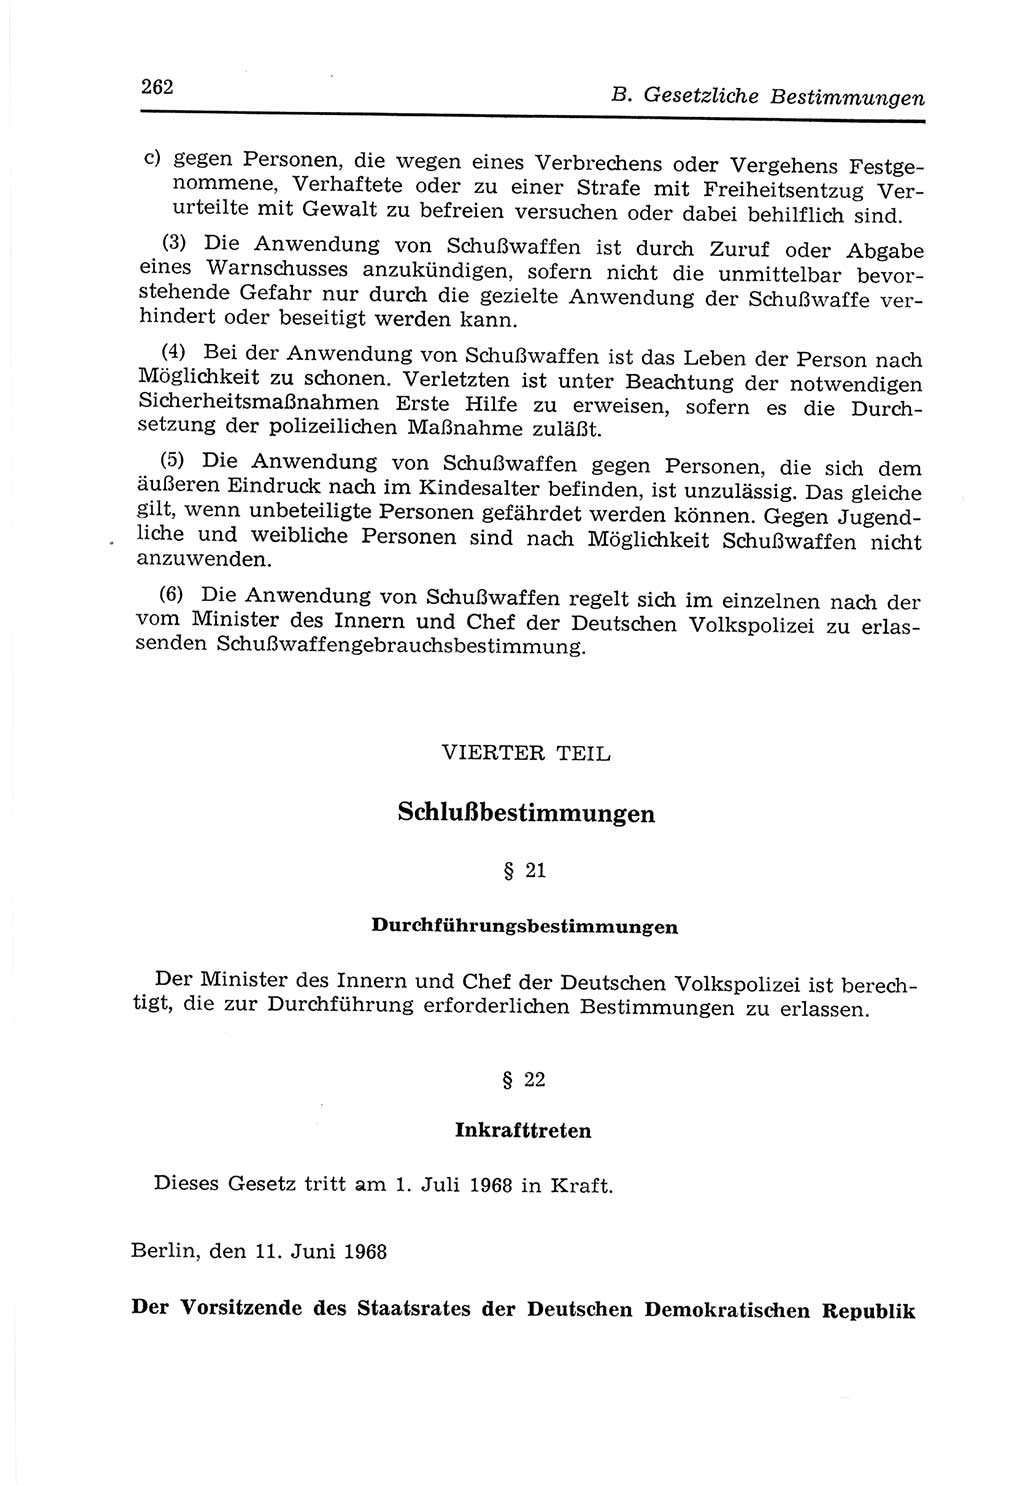 Strafvollzugs- und Wiedereingliederungsgesetz (SVWG) der Deutschen Demokratischen Republik (DDR) 1968, Seite 262 (SVWG DDR 1968, S. 262)